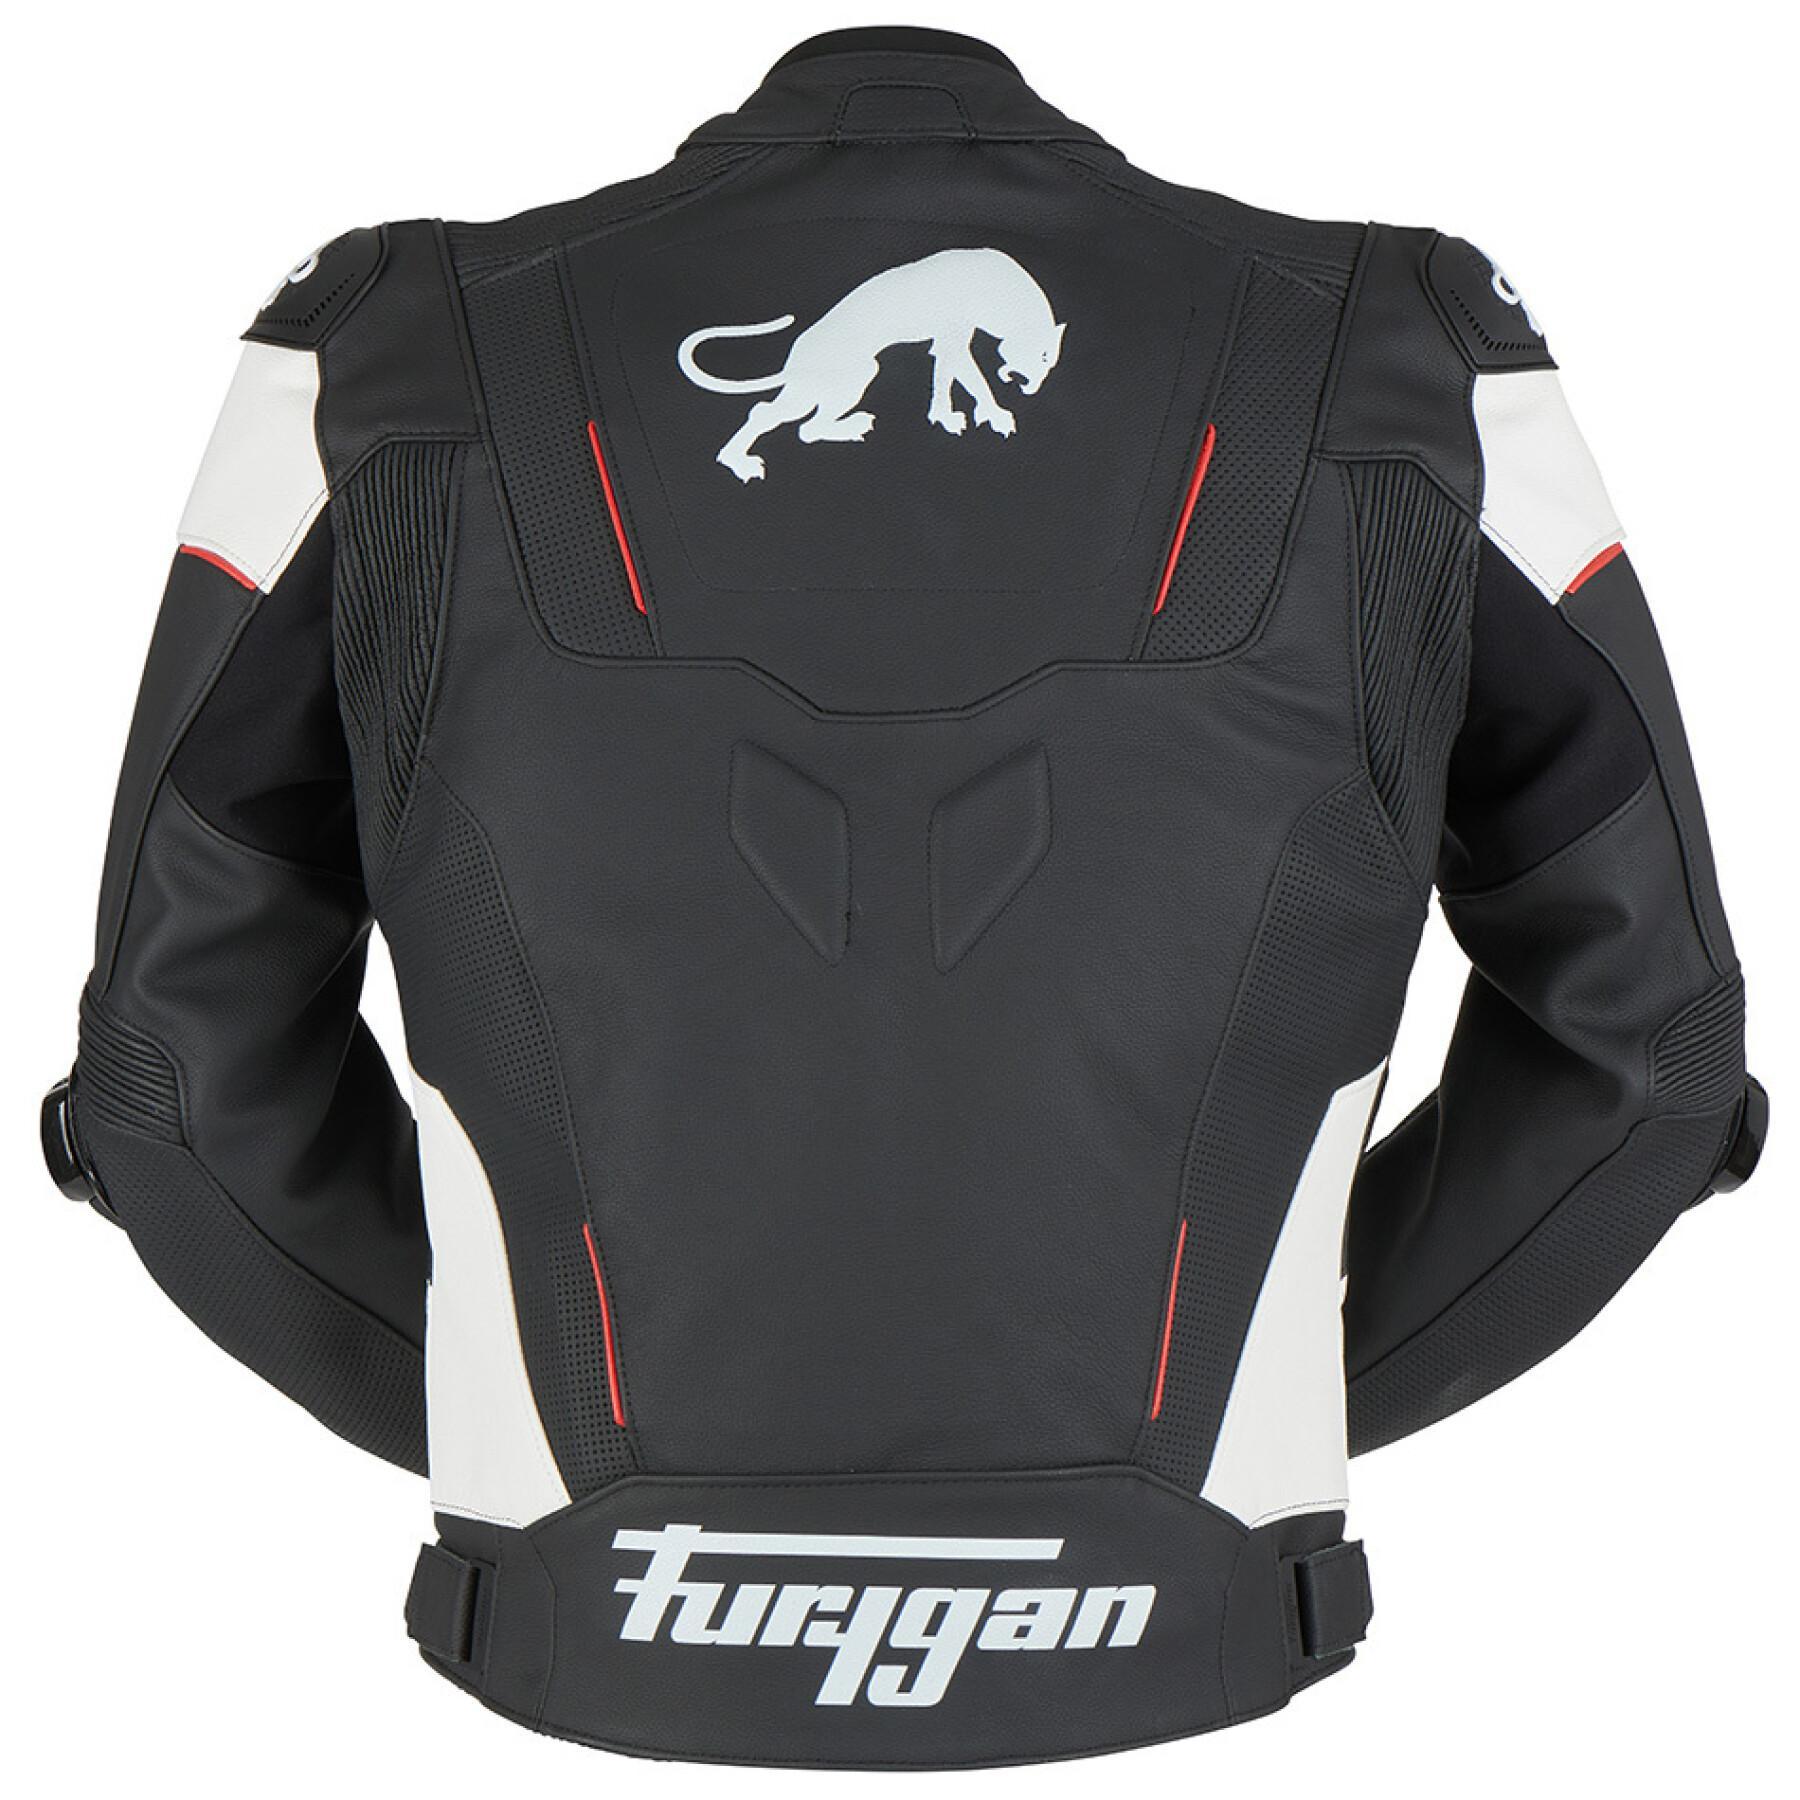 Leather motorcycle jacket Furygan Raptor Evo 2